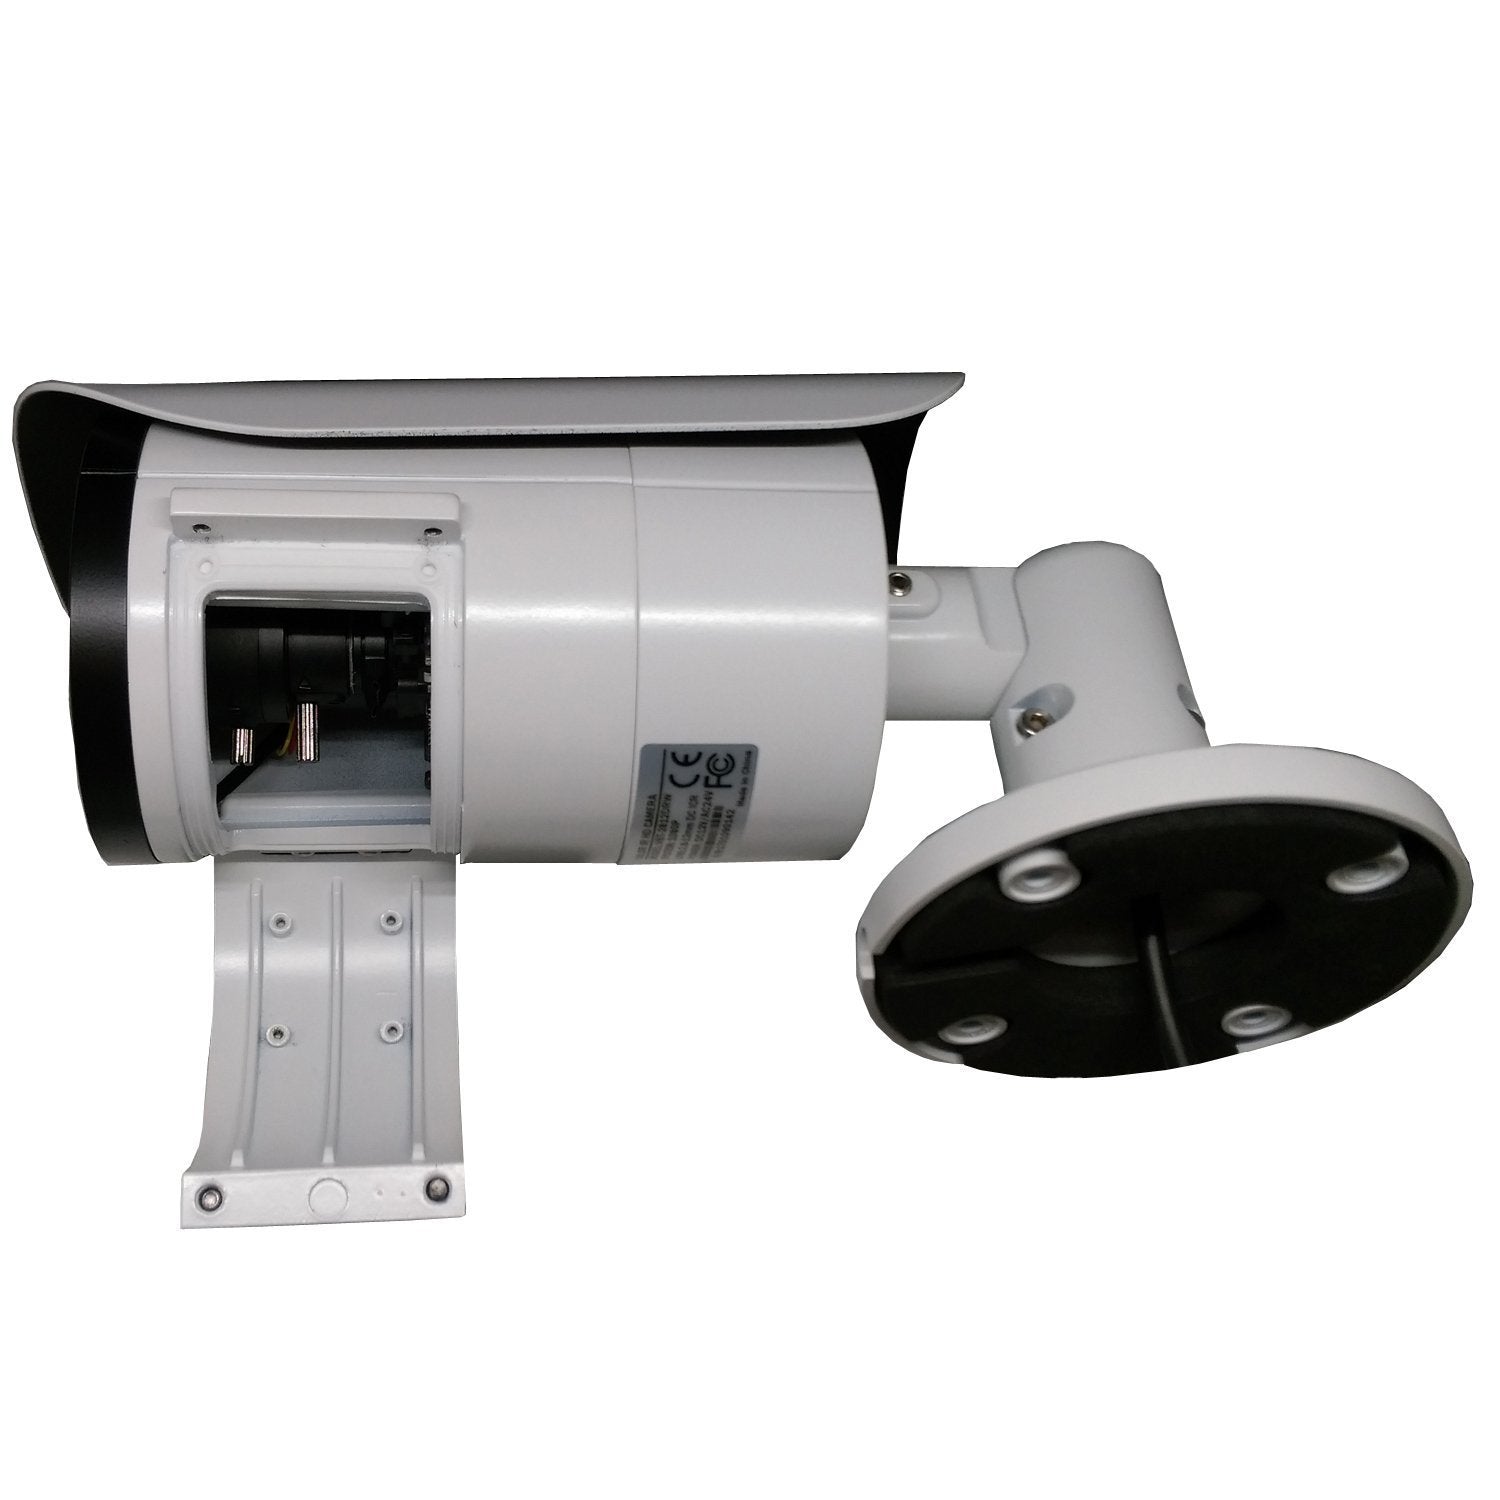 [VBT2-2812DRW] APPRO 2.8-12mm Varifocal Lens Bullet Outdoor Surveillance  Camera, 1080P Full HD, 2.1MP 4in1 (TVI/AHD/CVI/CVBS), Smart IR Tech, Analog 